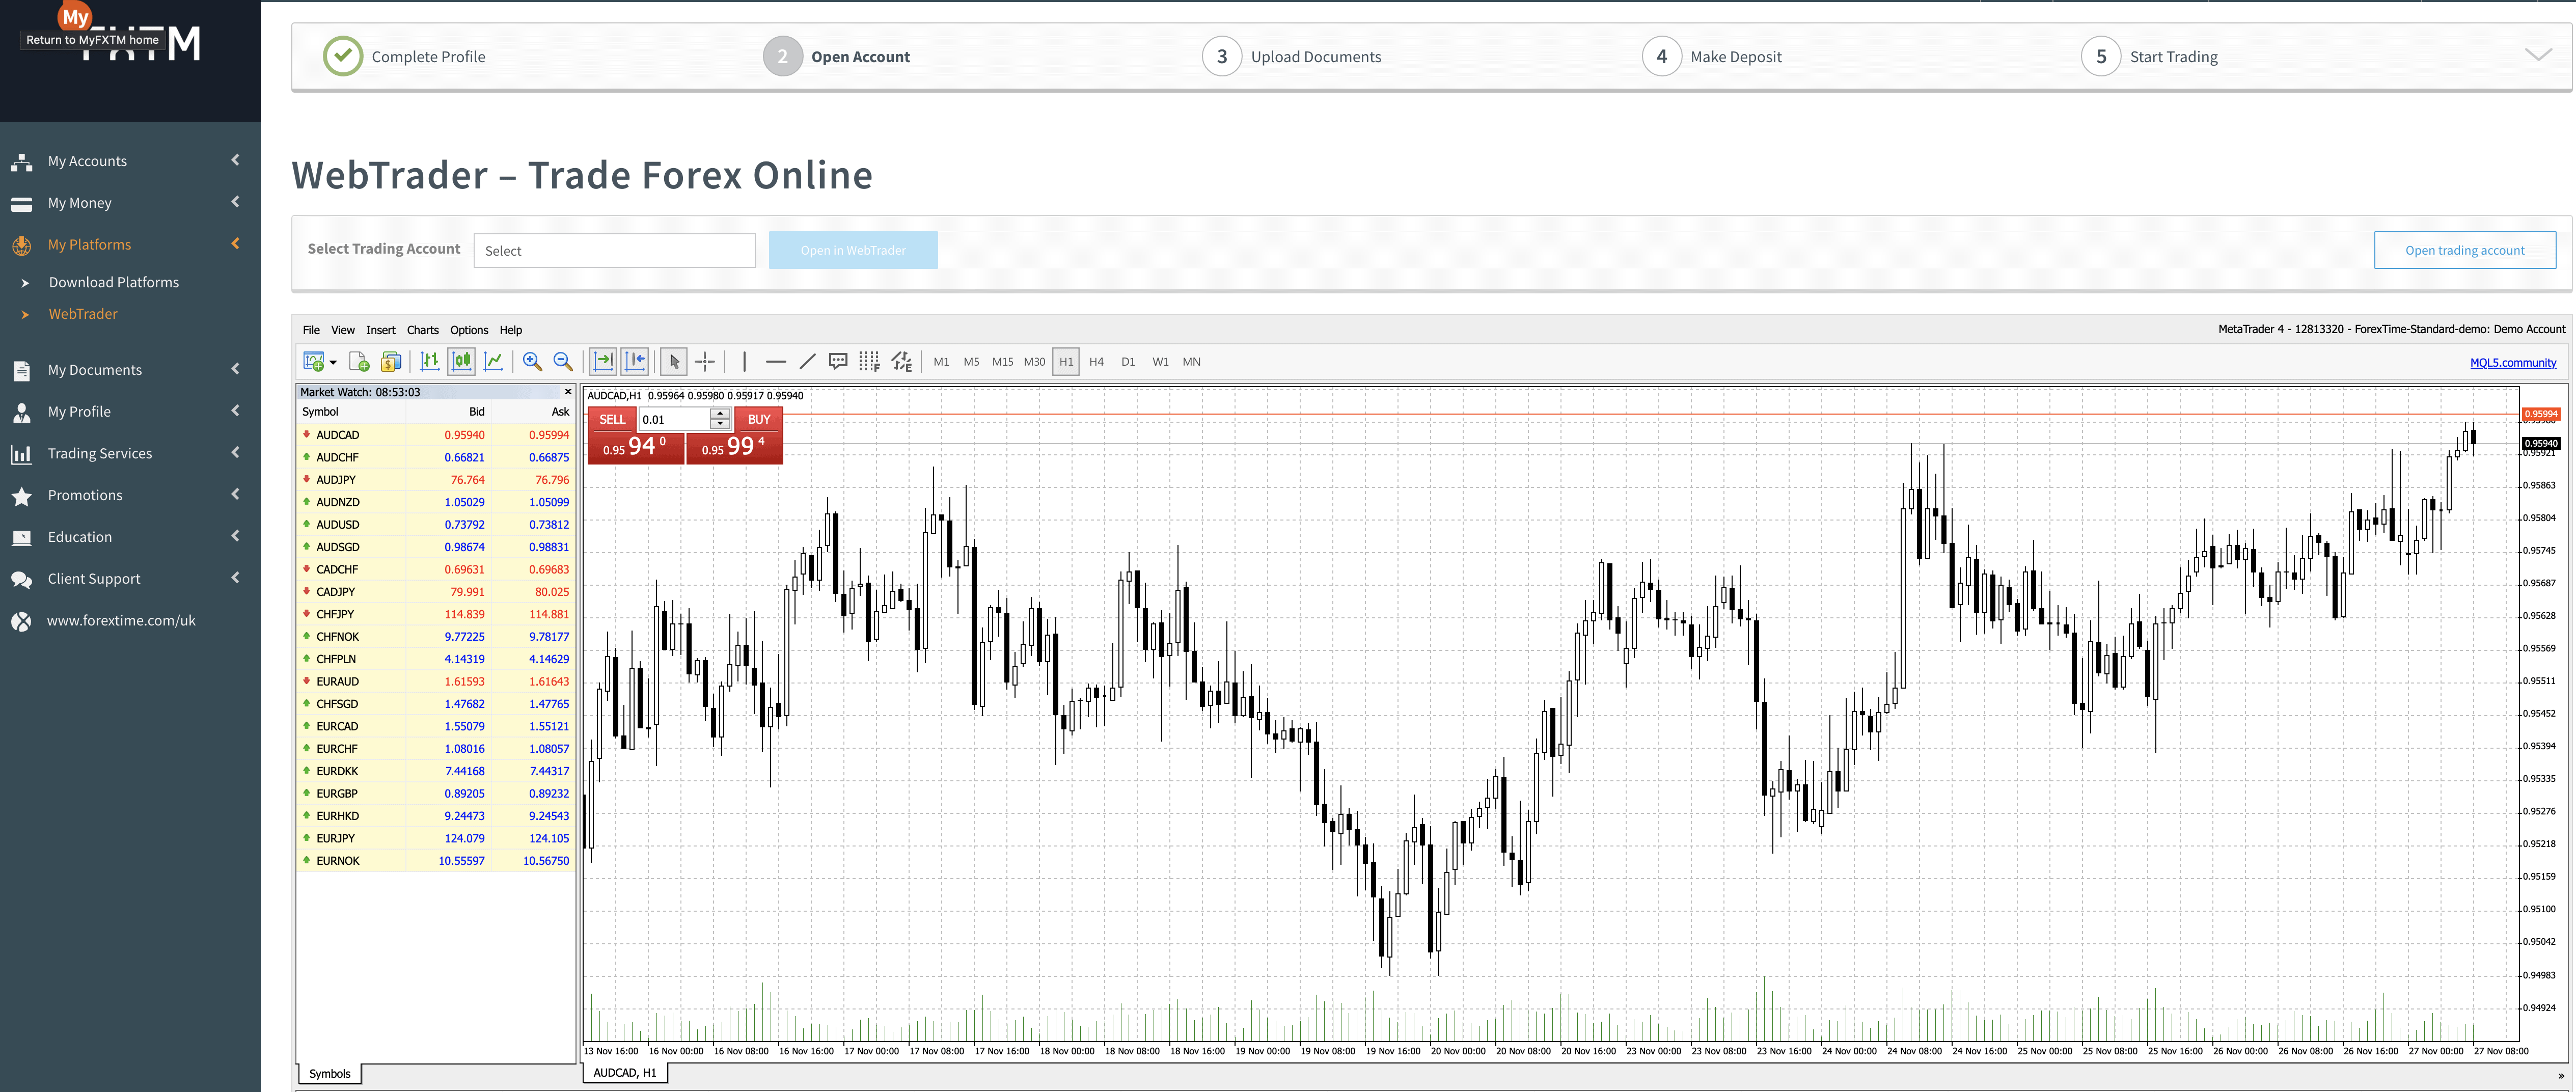 FXTM trading platform